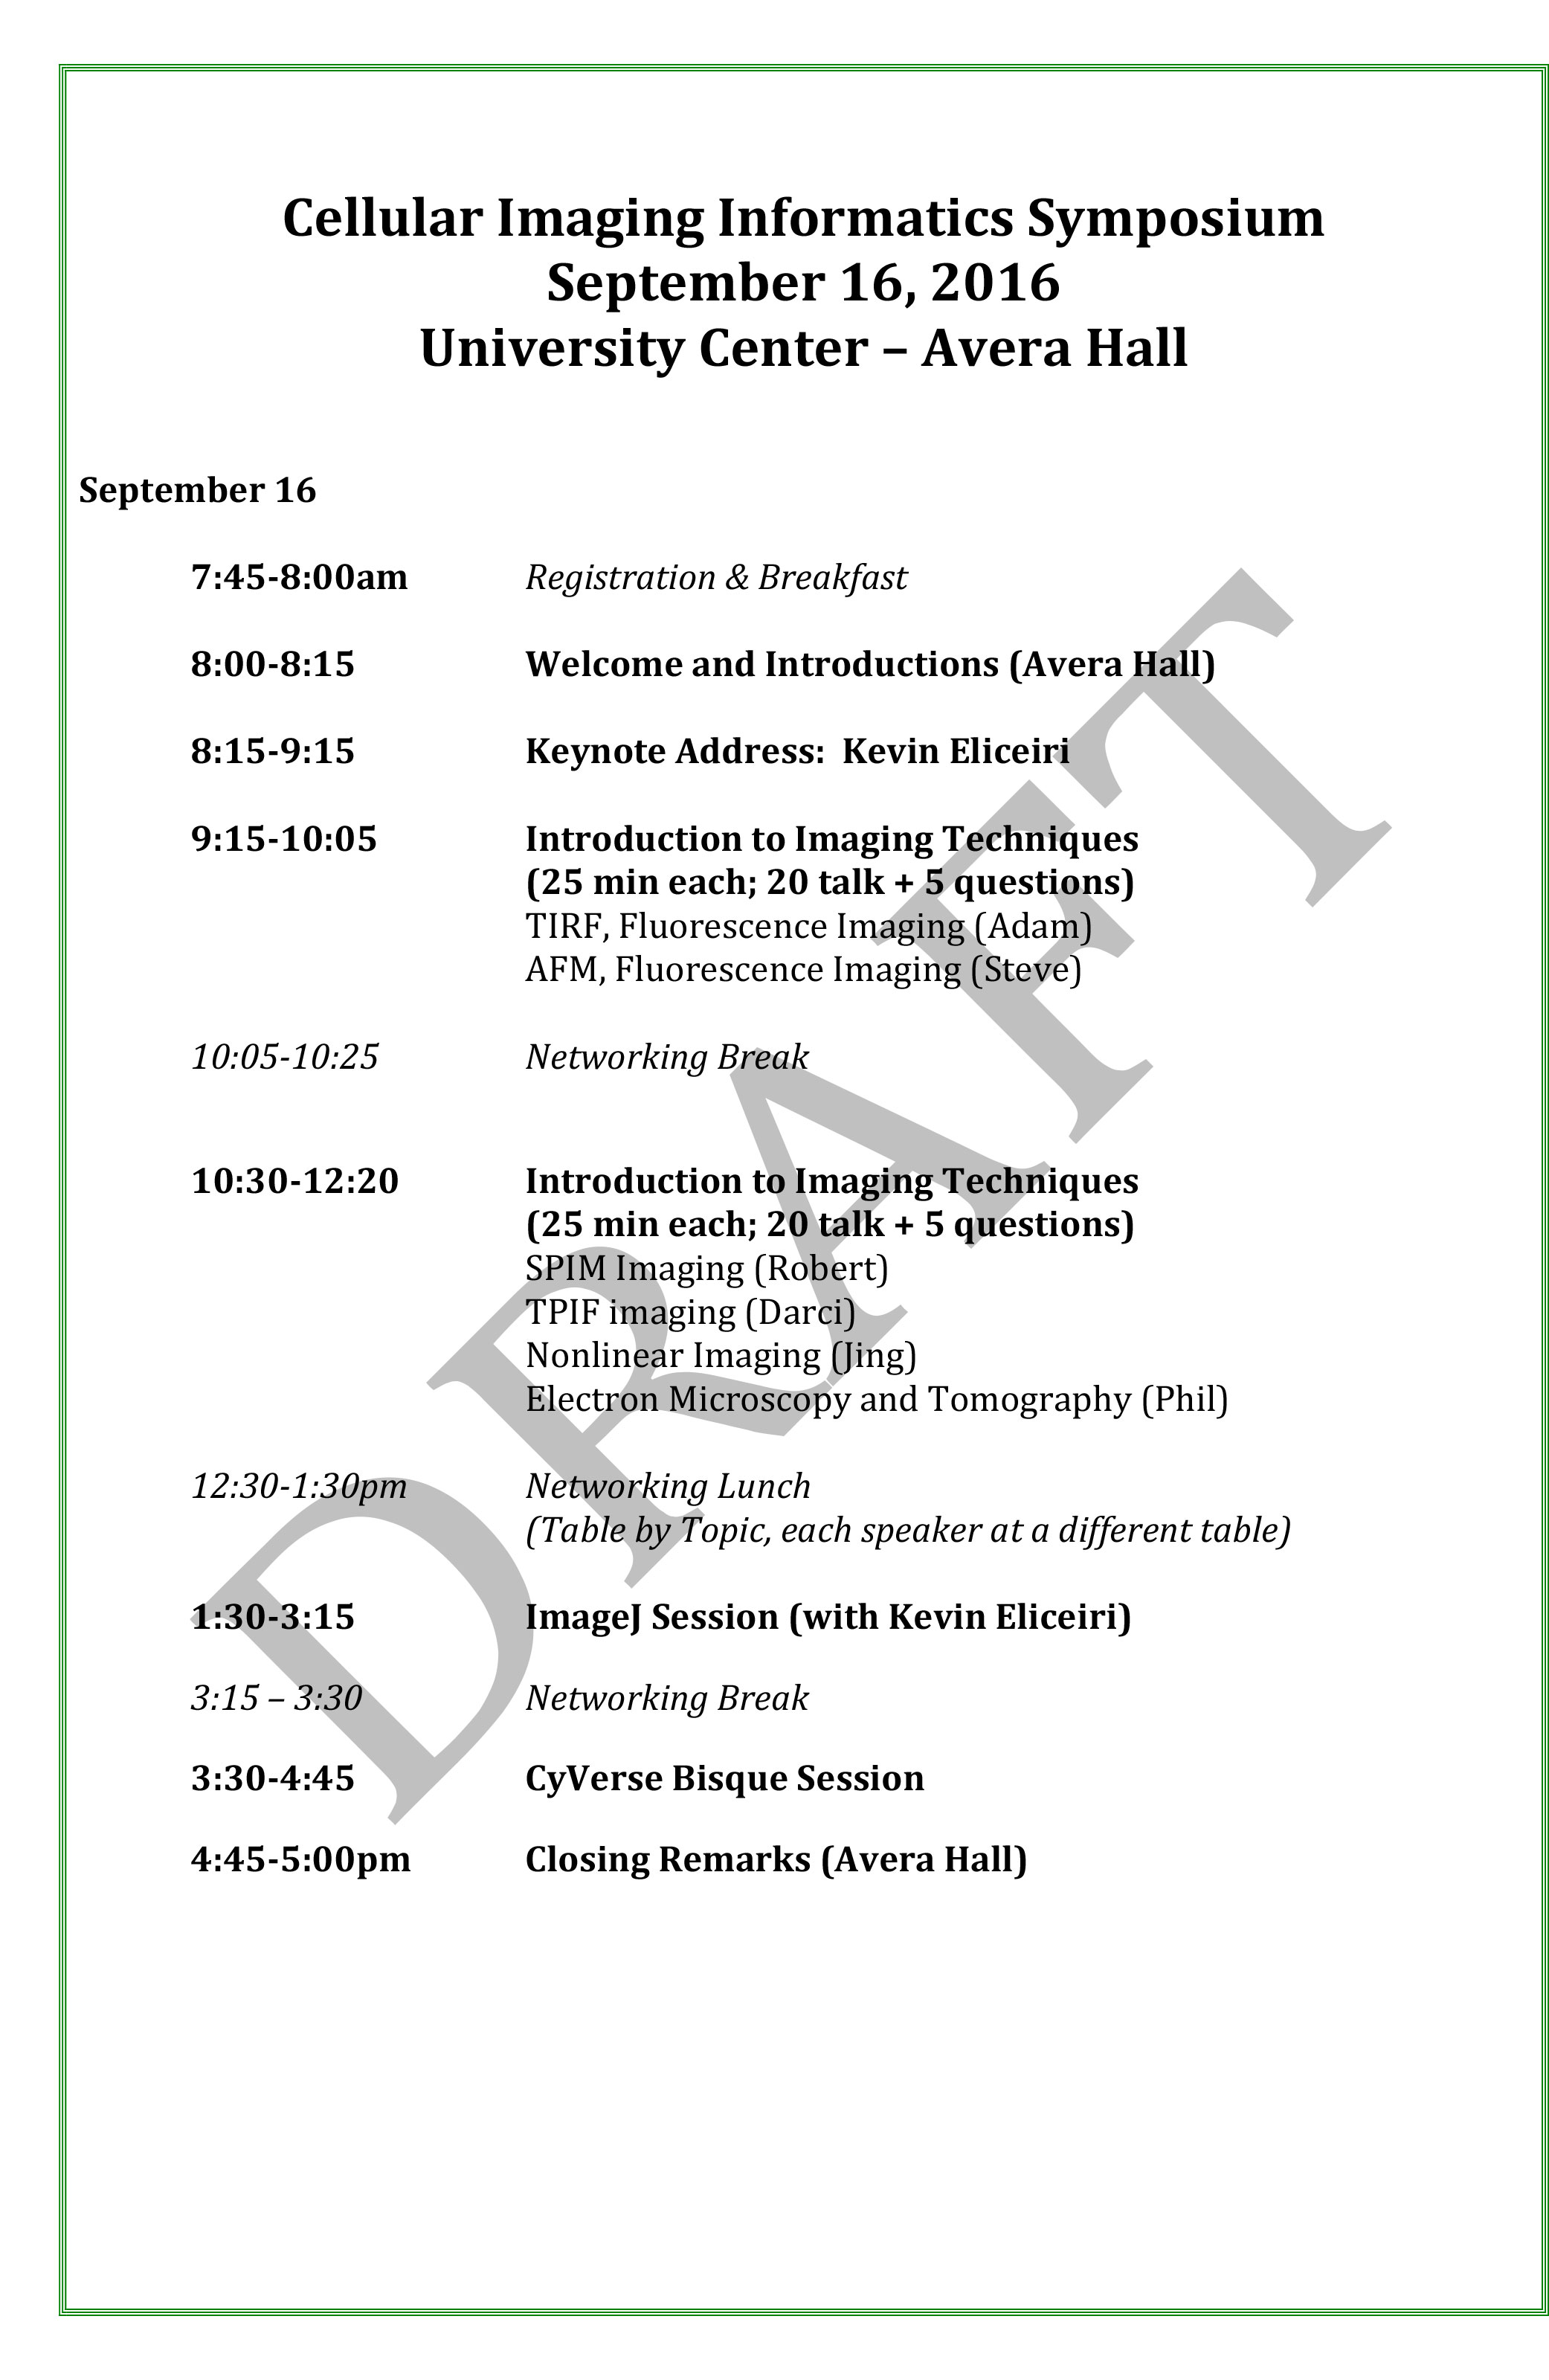 Imaging-Informatics-Symposium-Agenda